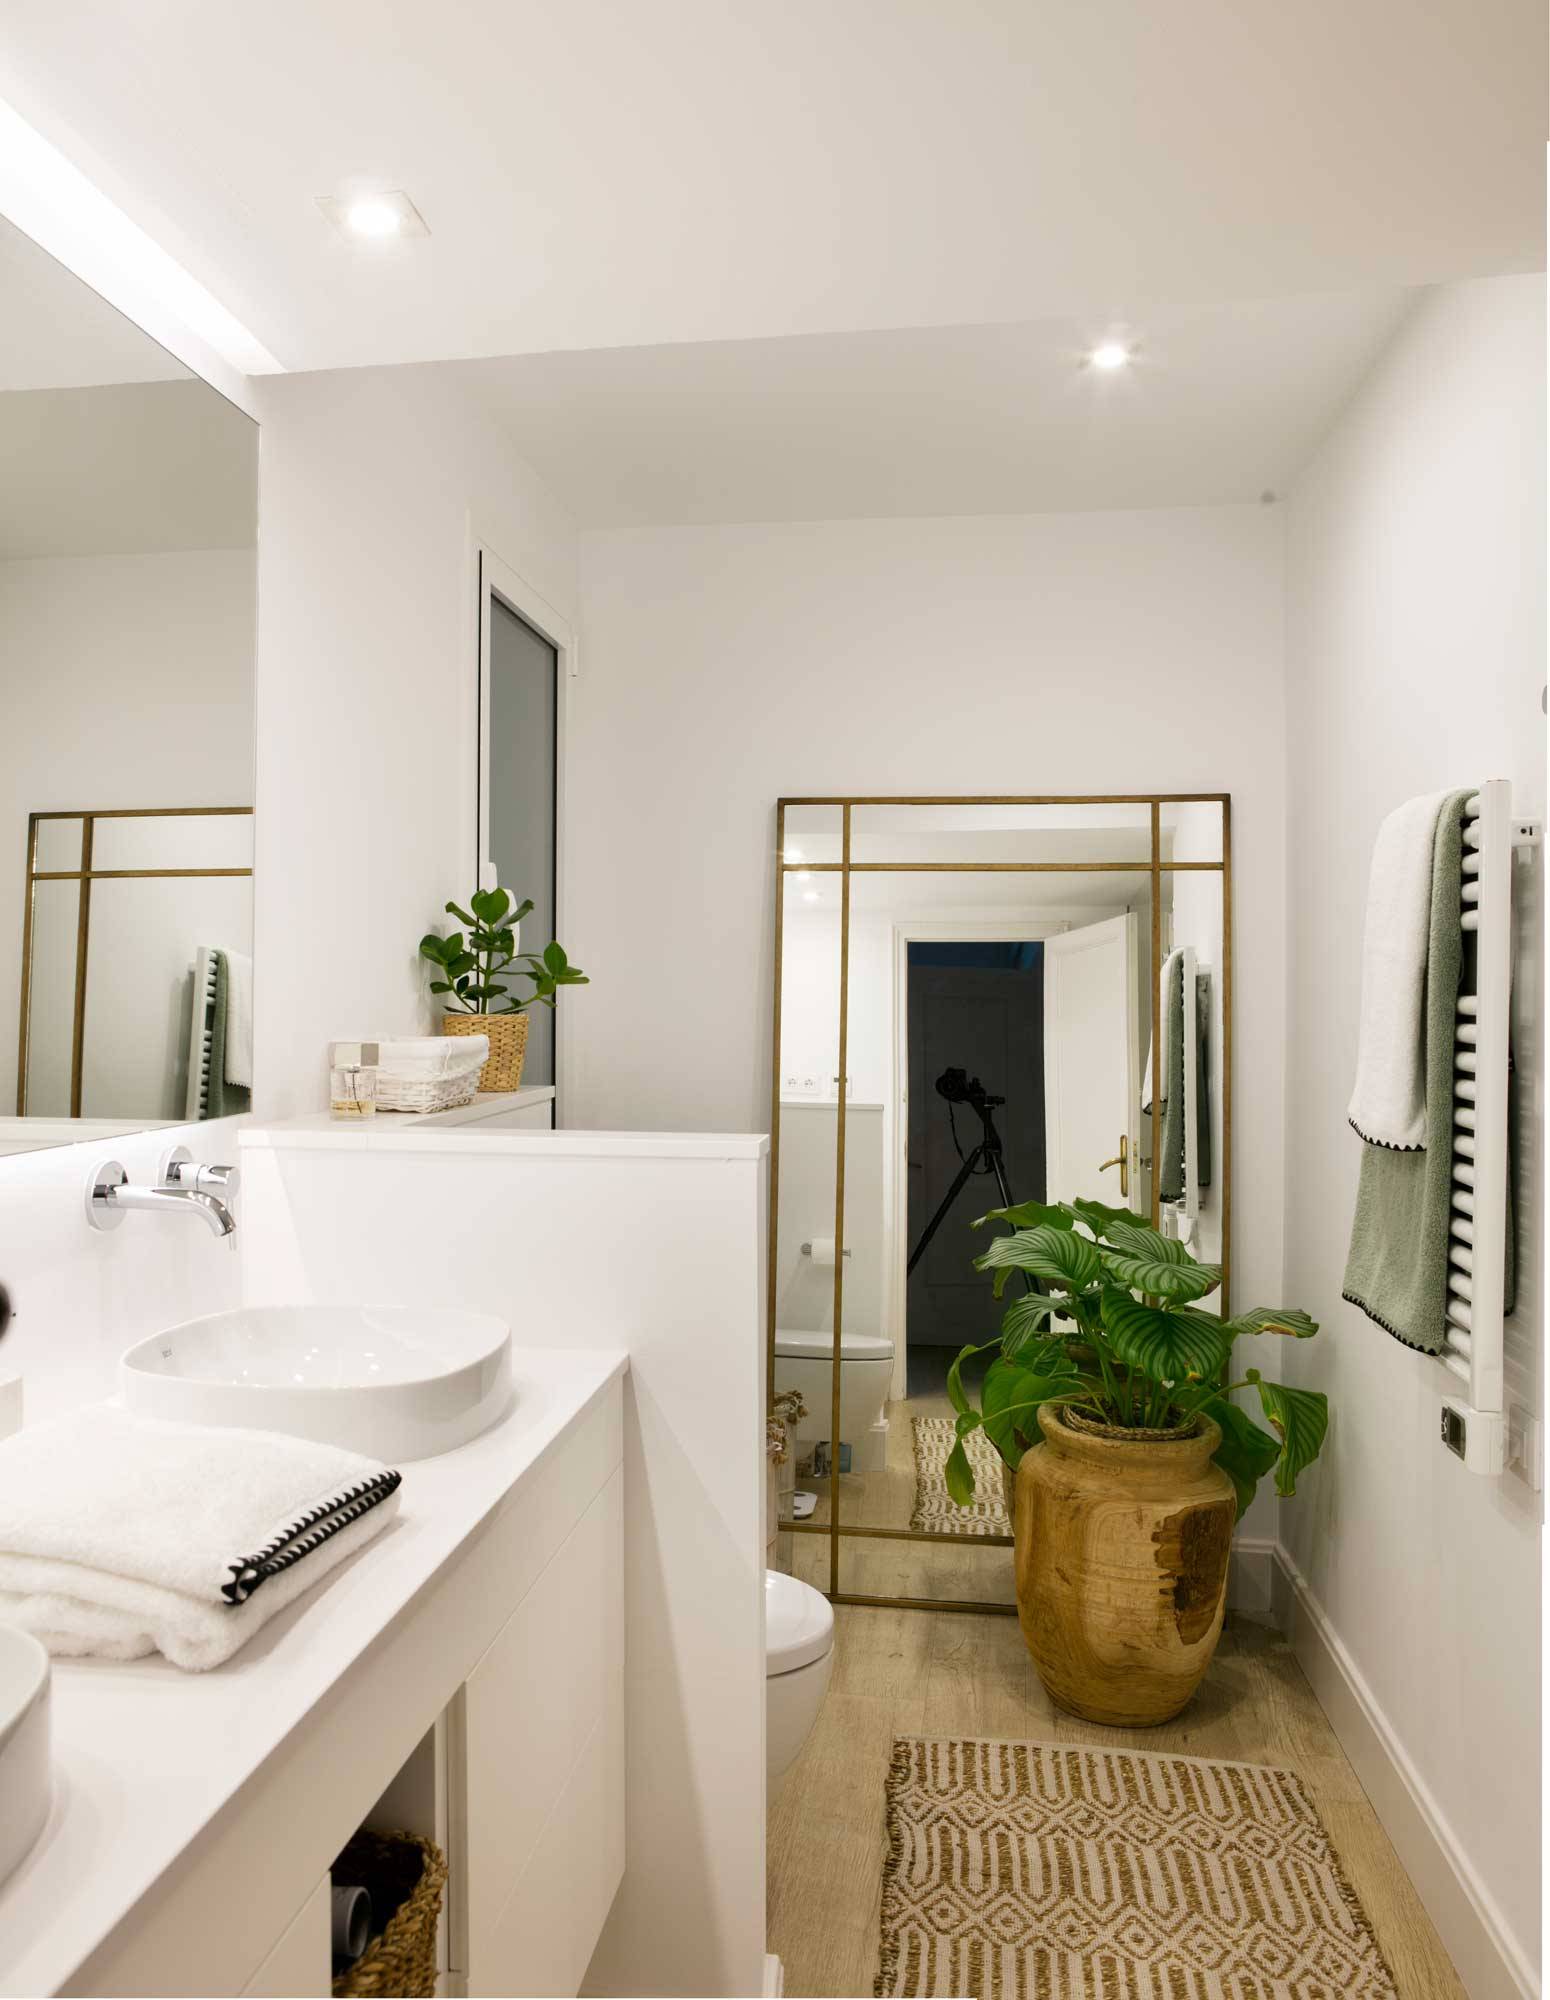 Baño pequeño con mobiliario de color blanco, espejo grande y planta. 